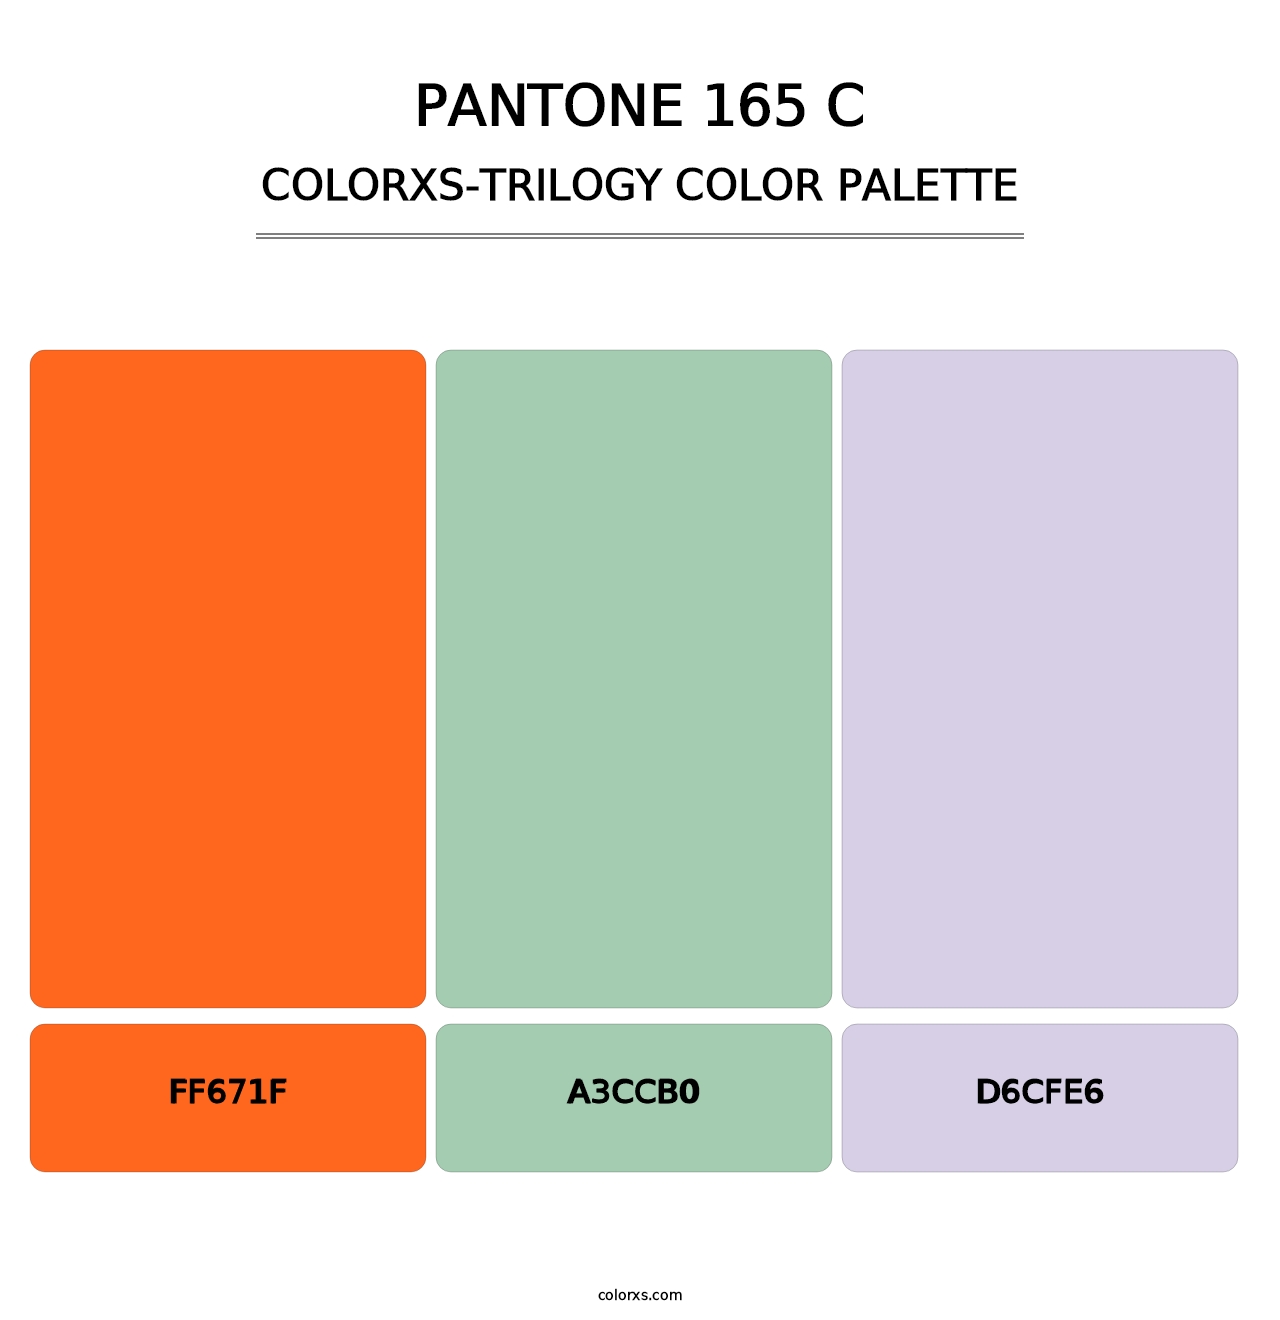 PANTONE 165 C - Colorxs Trilogy Palette